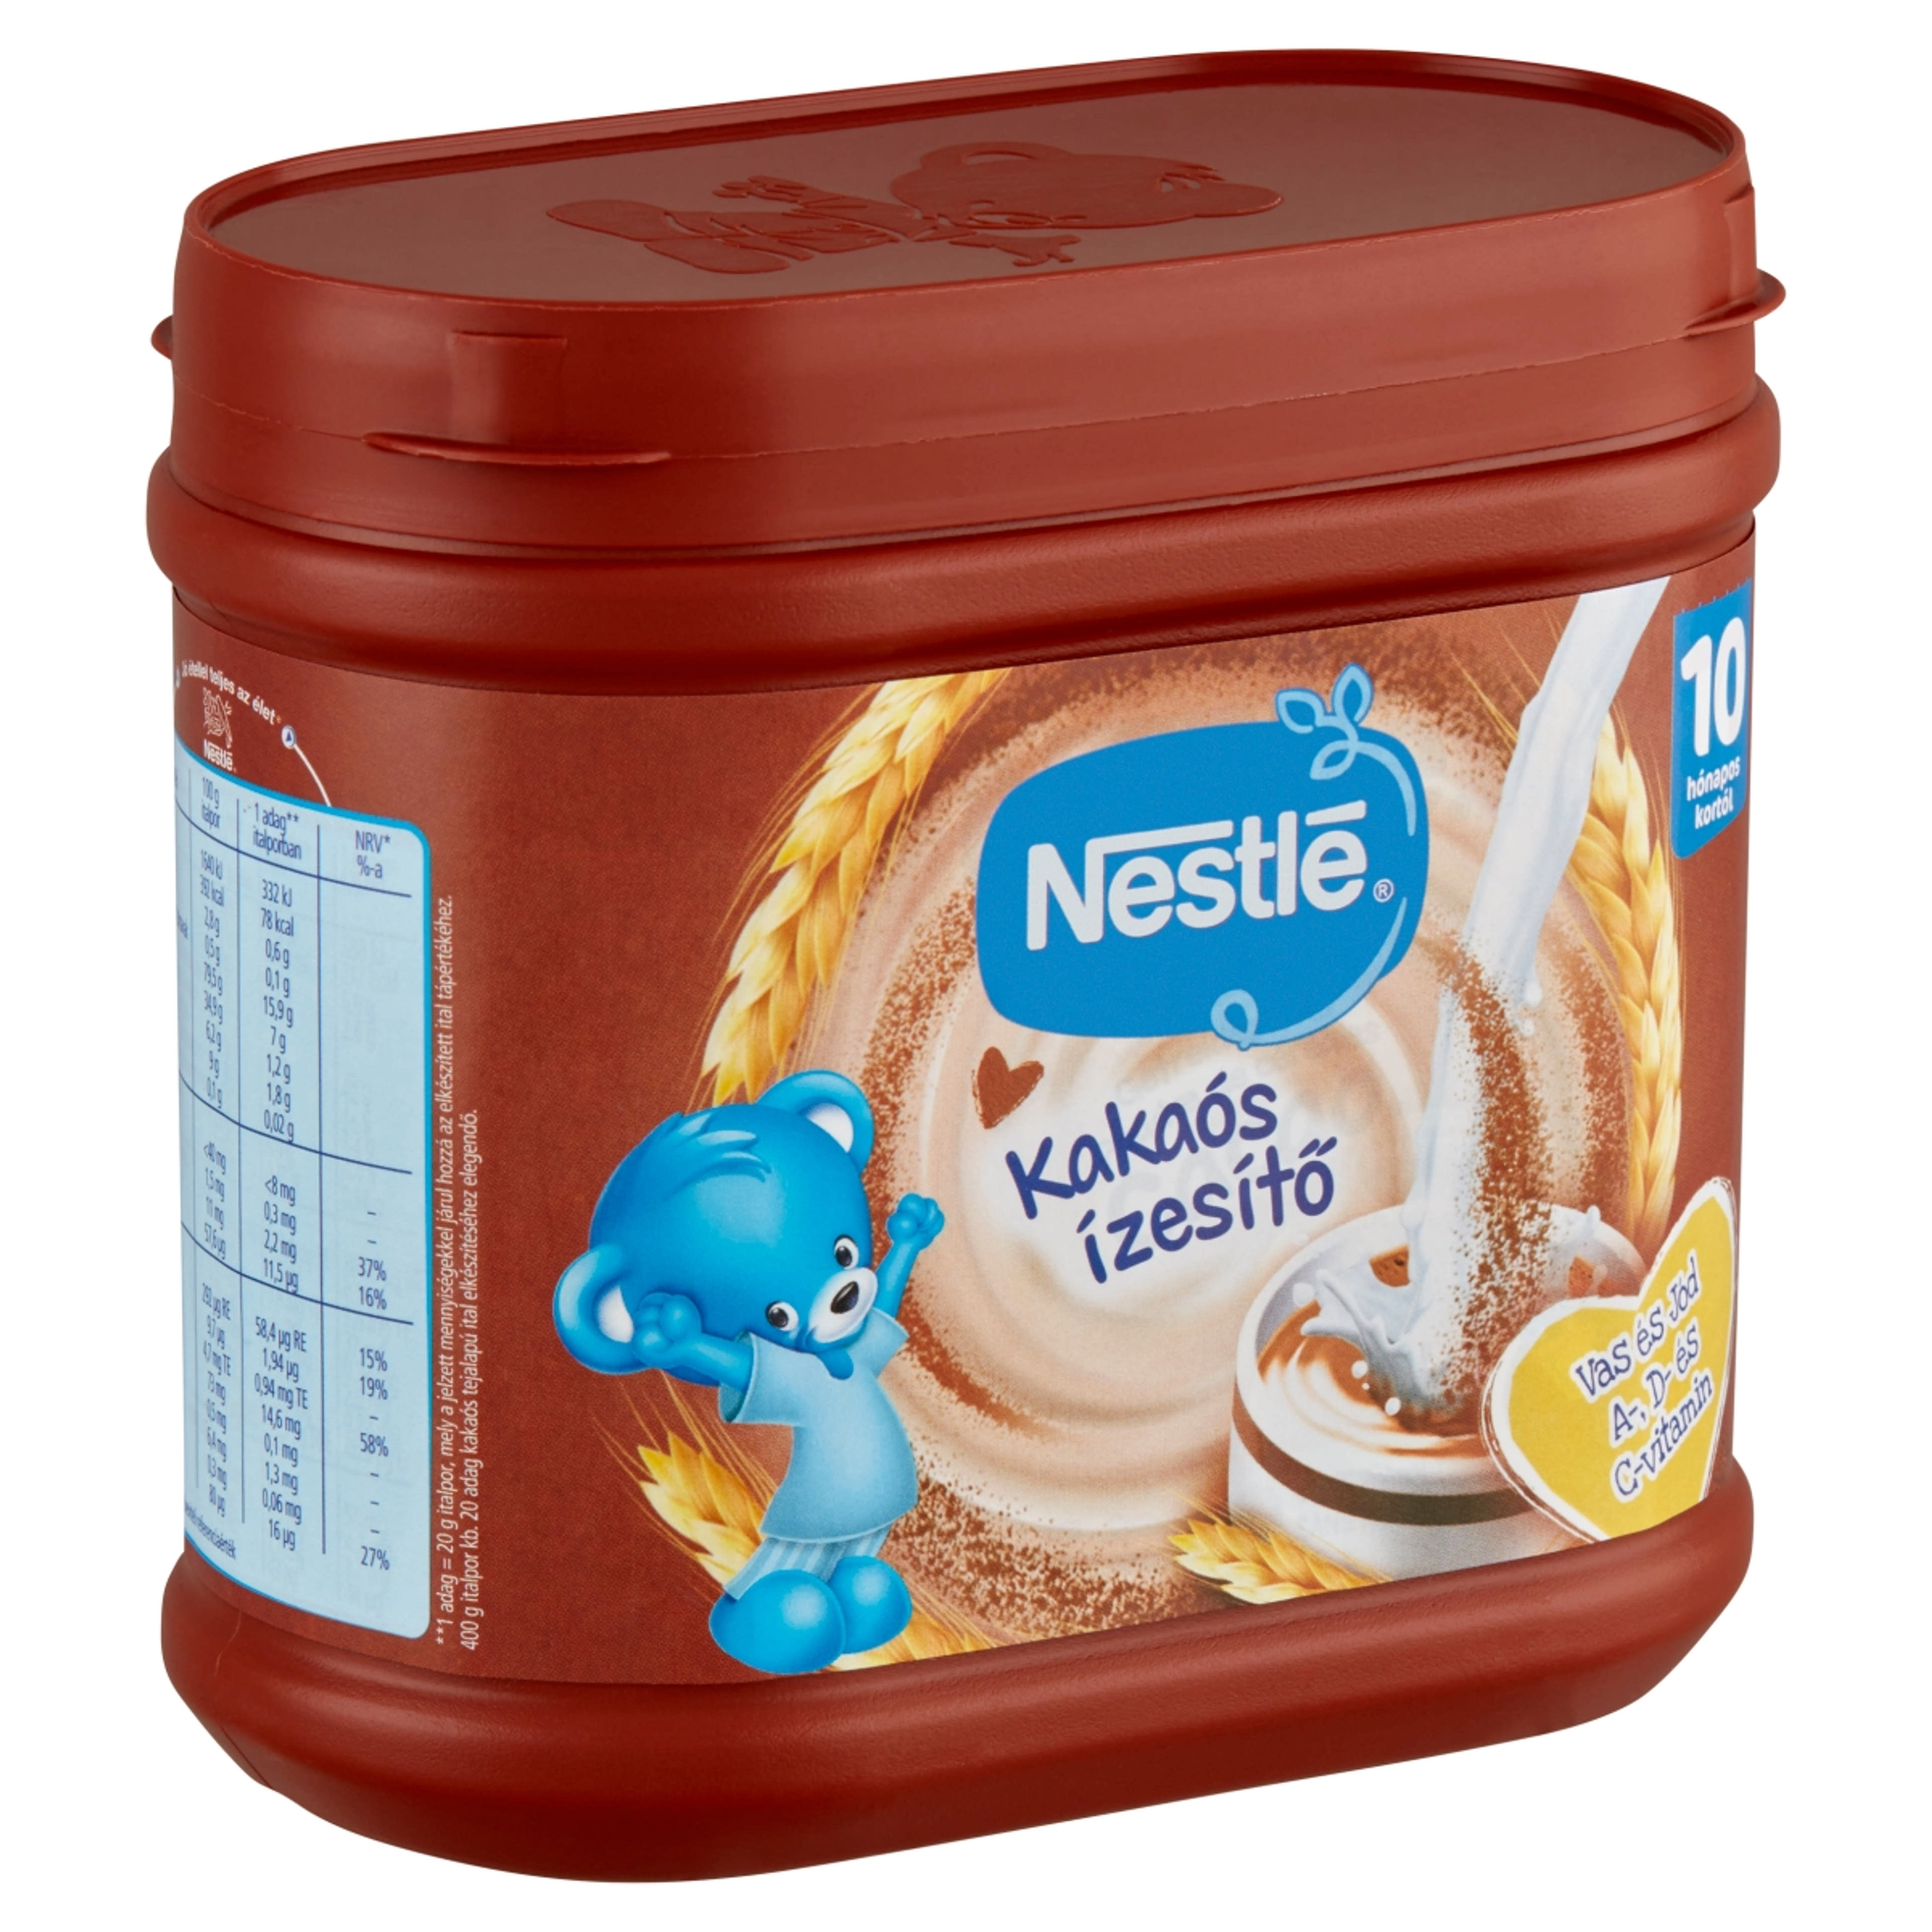 Nestlé Kakaós Ízesítő - 400 g-2